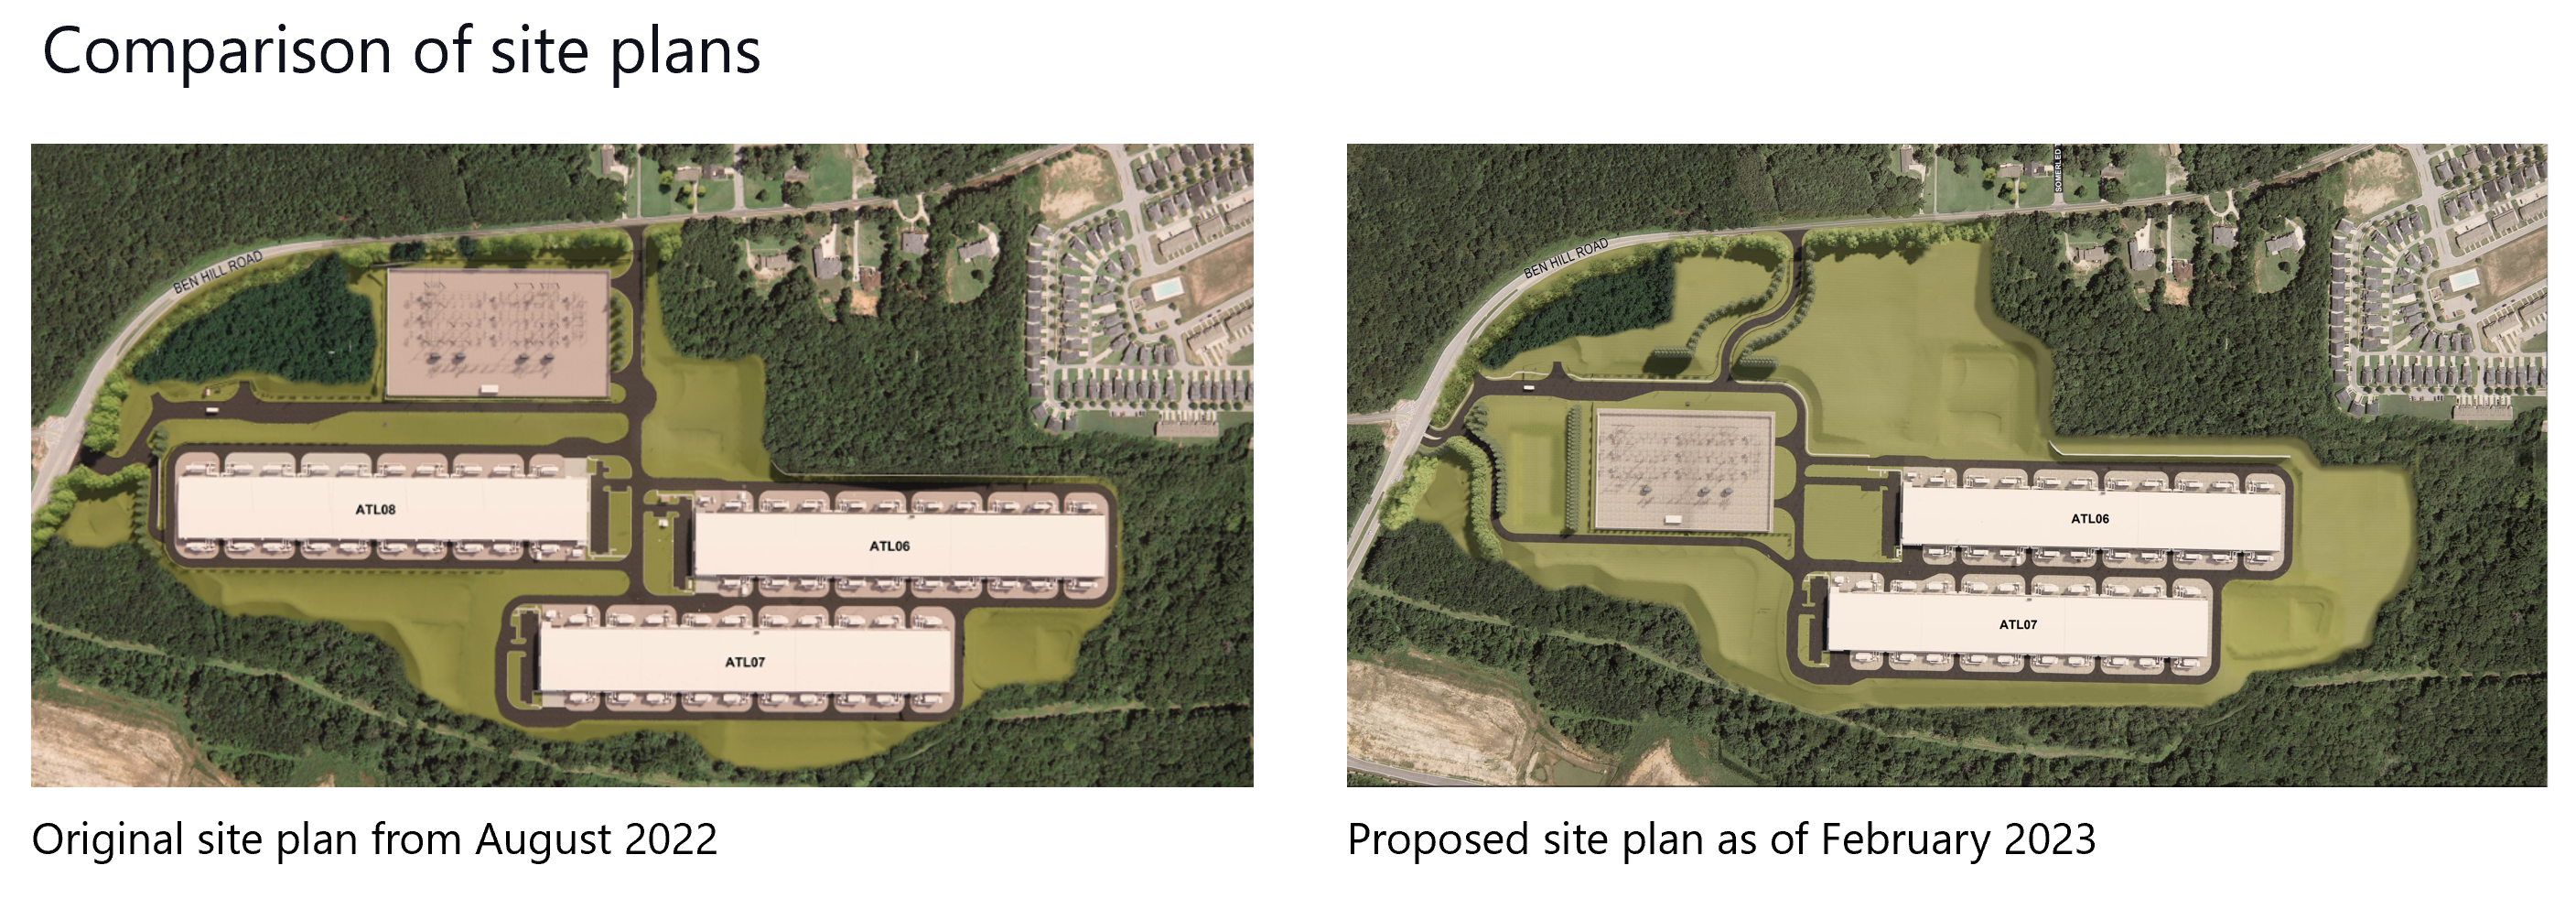 Comparison of site plans